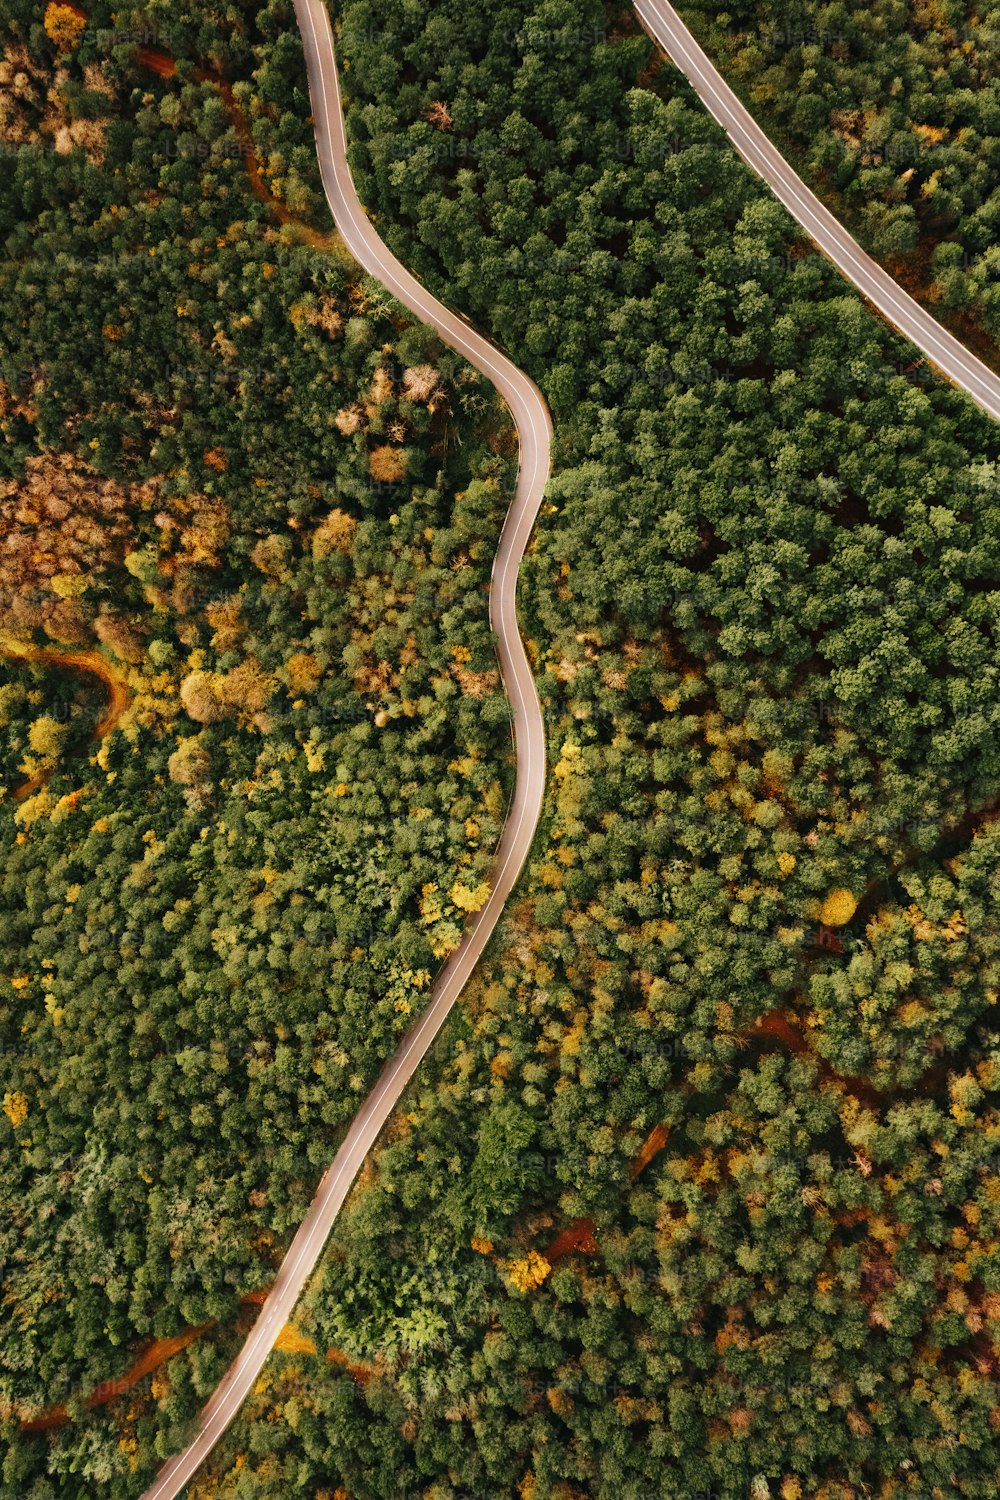 Un camino sinuoso en medio de un bosque